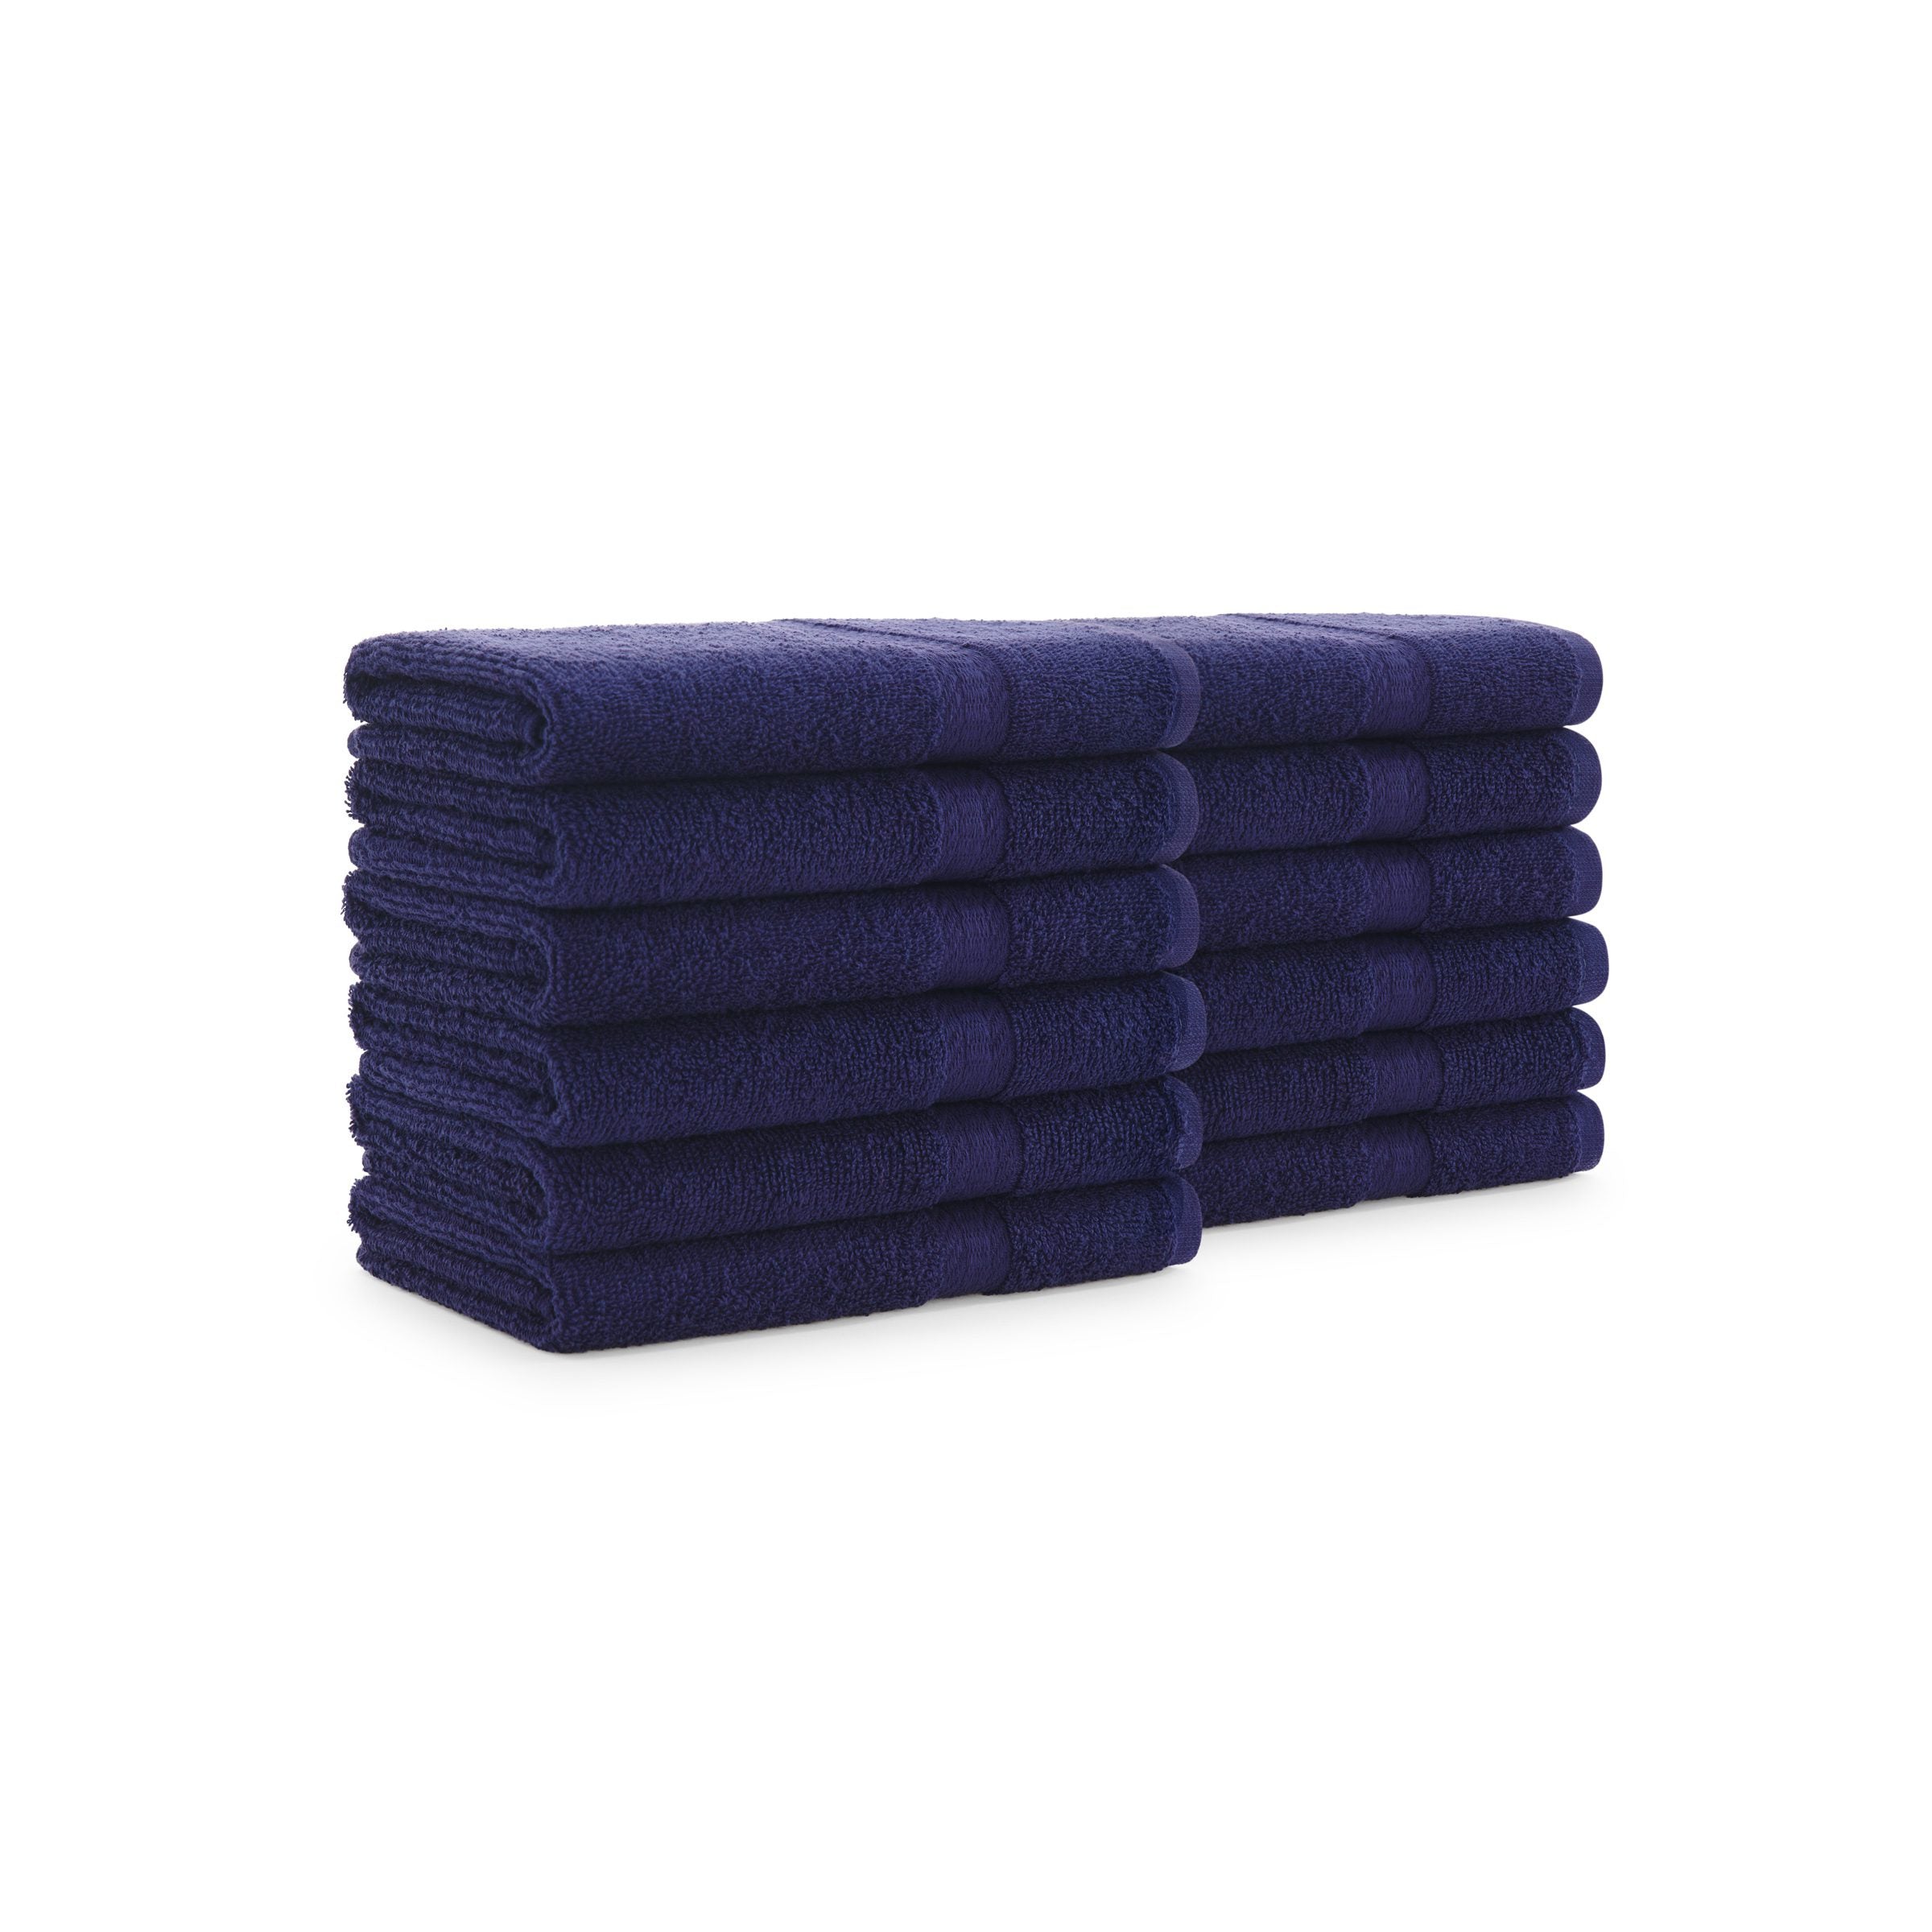 16x28-Dark Brown Bleach Resistant Hand towels 100% Cotton